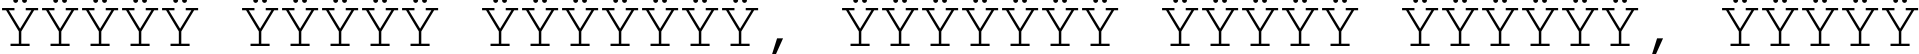 Пример написания шрифтом Courier текста на белорусском